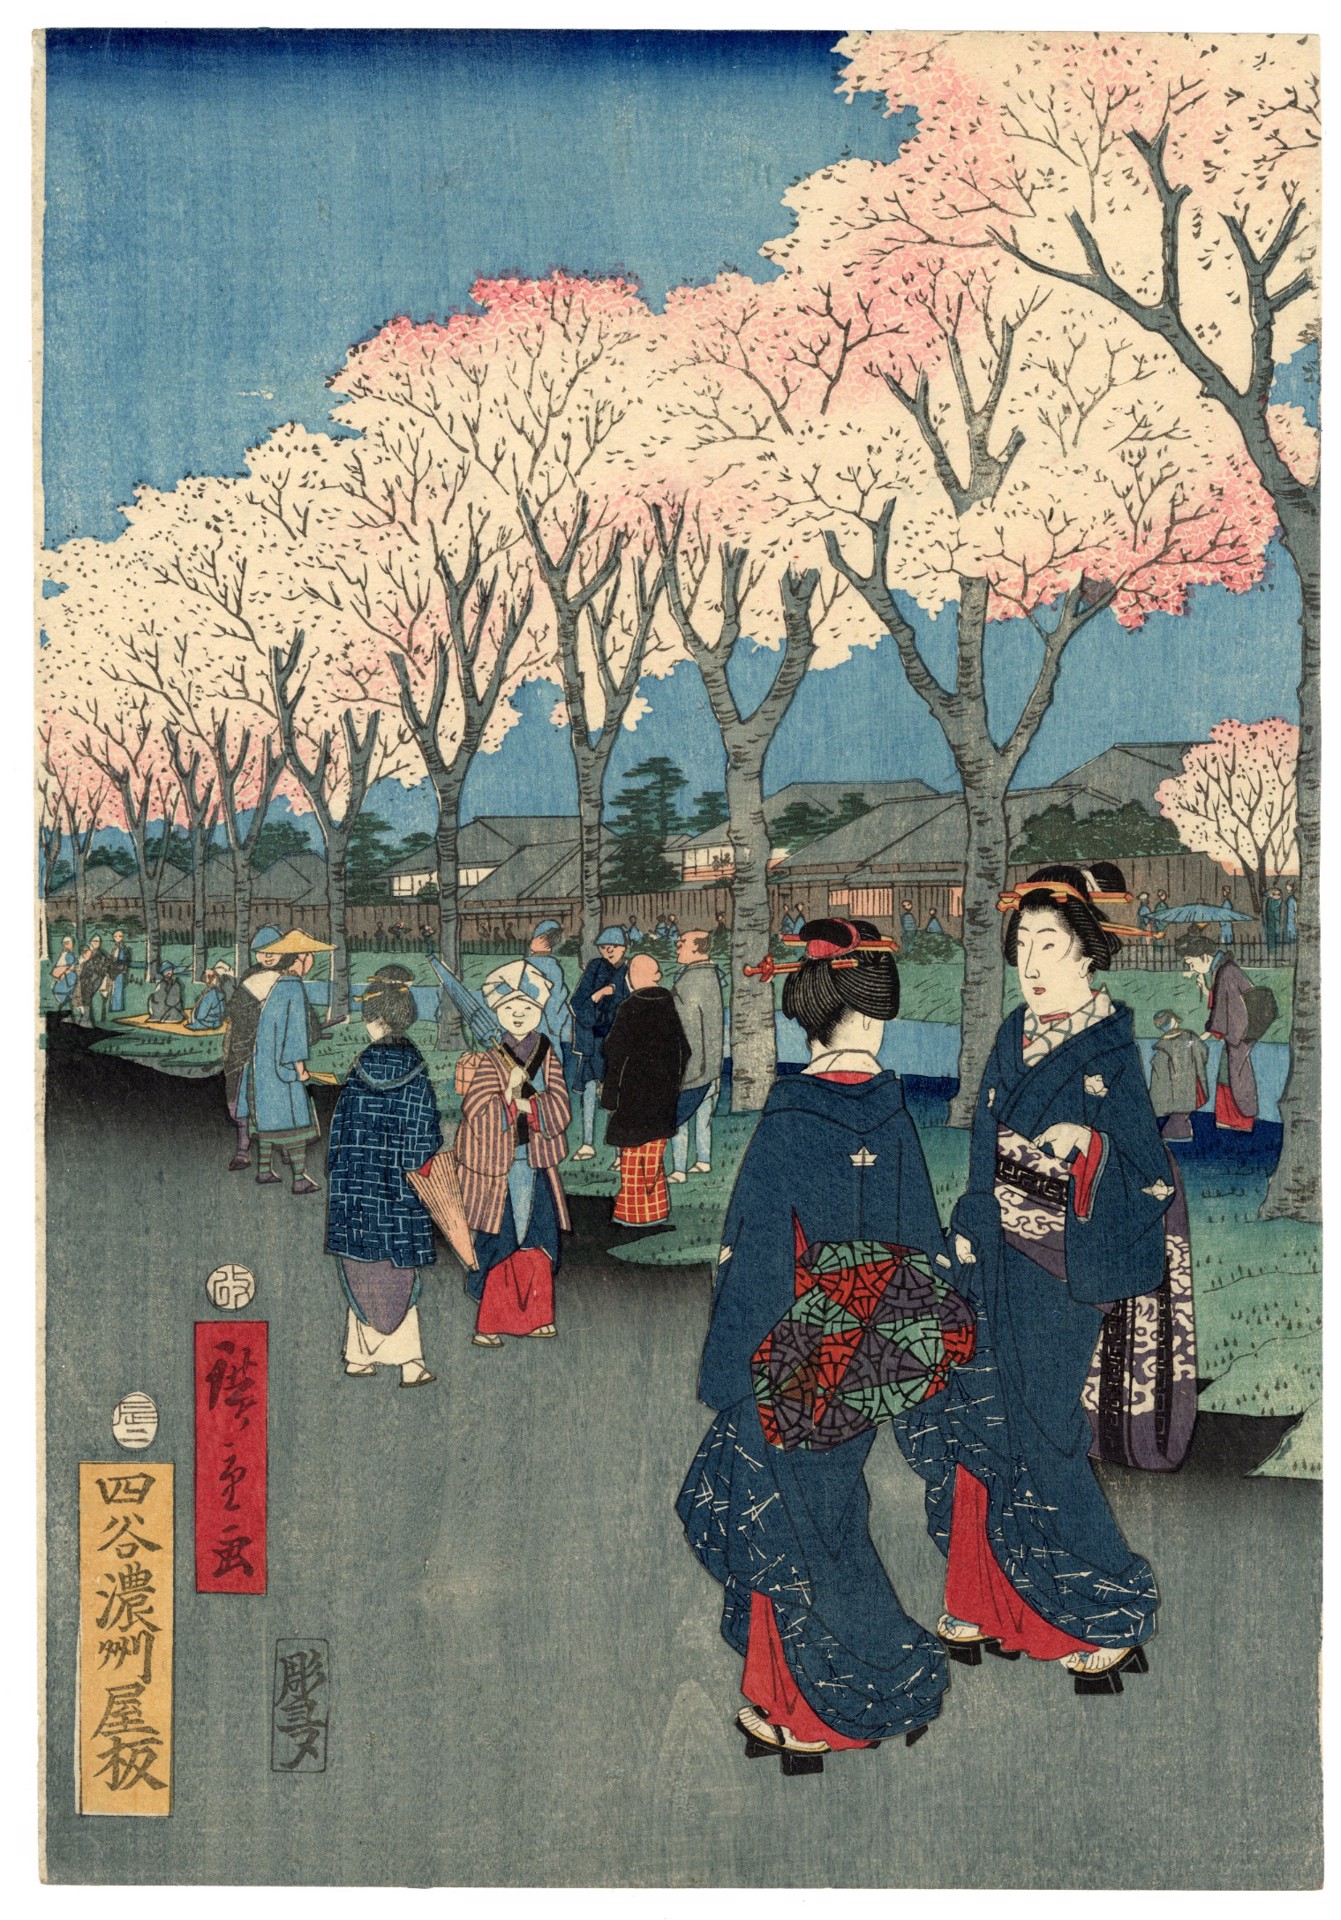 19th Century Japanese Silk Painting by Kano Chikanobu. Cherry Blossoms